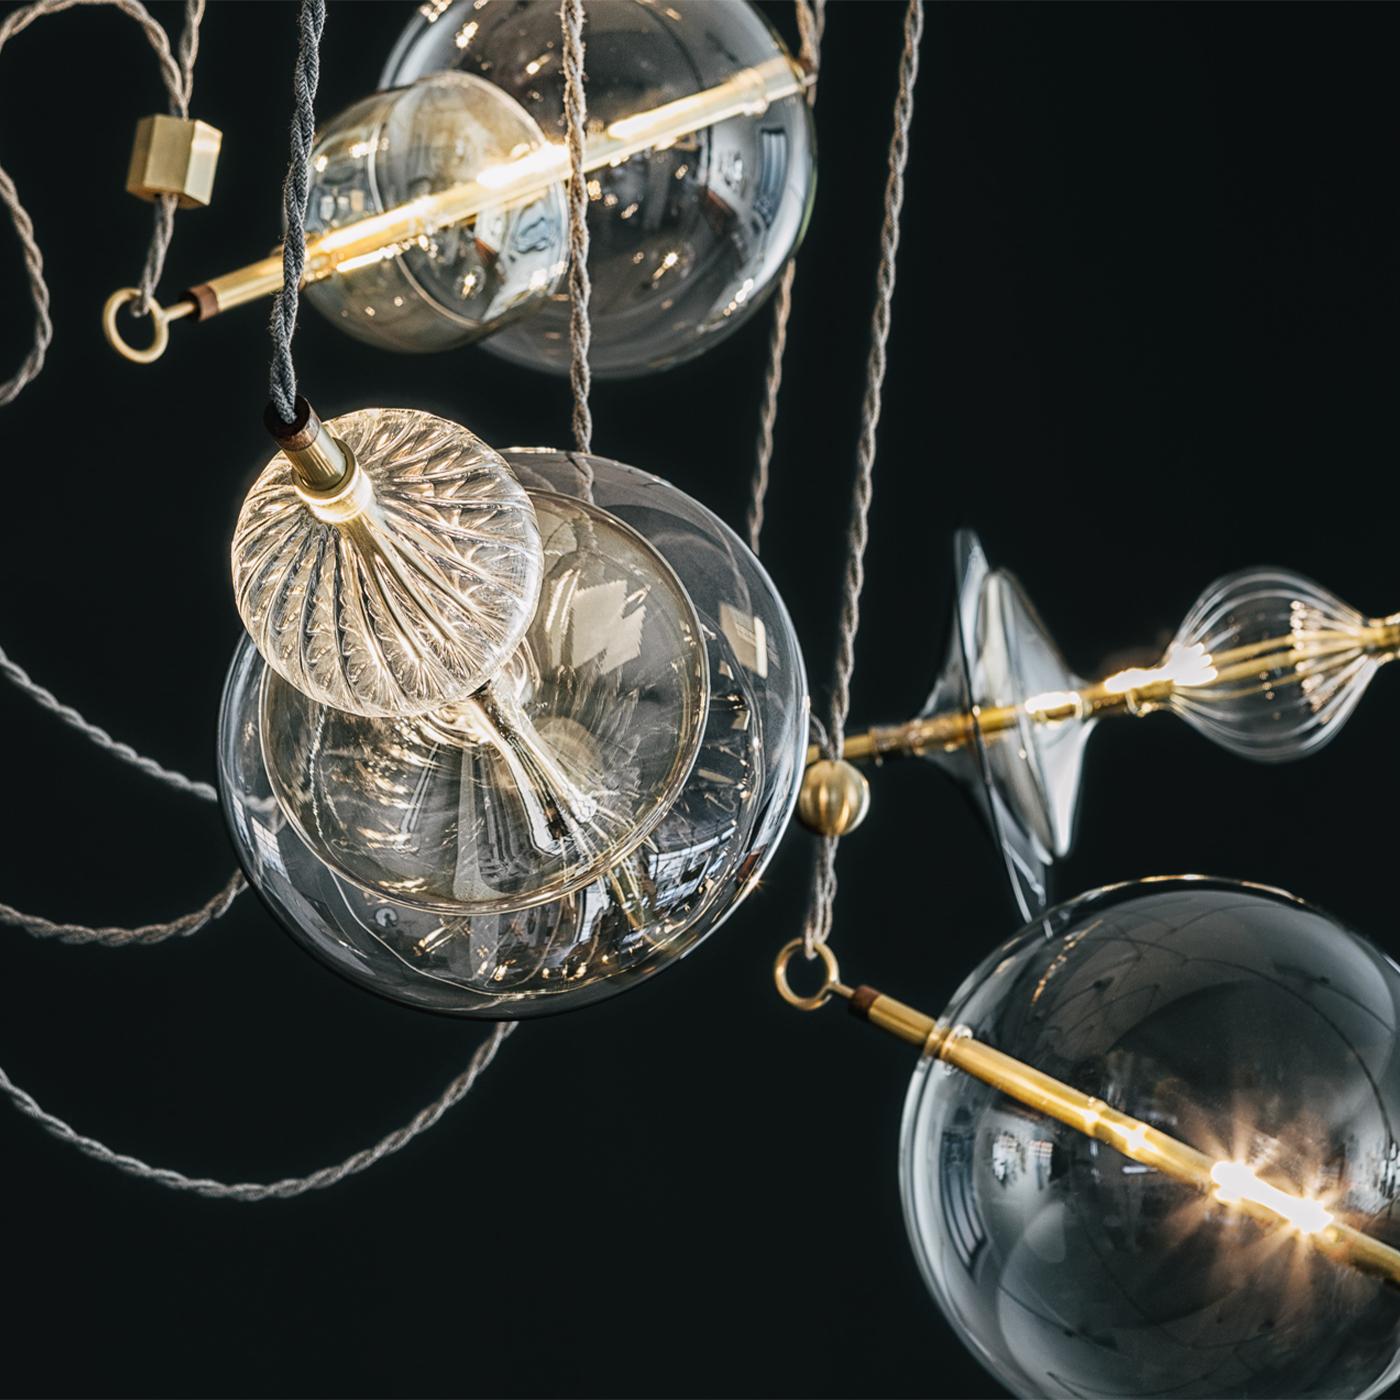 Inspiriert von einer Trapeznummer im Zirkus, ist der Trapezi ein atemberaubender, moderner Kronleuchter, der in Italien gefertigt und montiert wird. Die einzigartige Leuchte kombiniert mundgeblasenes, transparentes oder handbemaltes A Lustro-Glas,